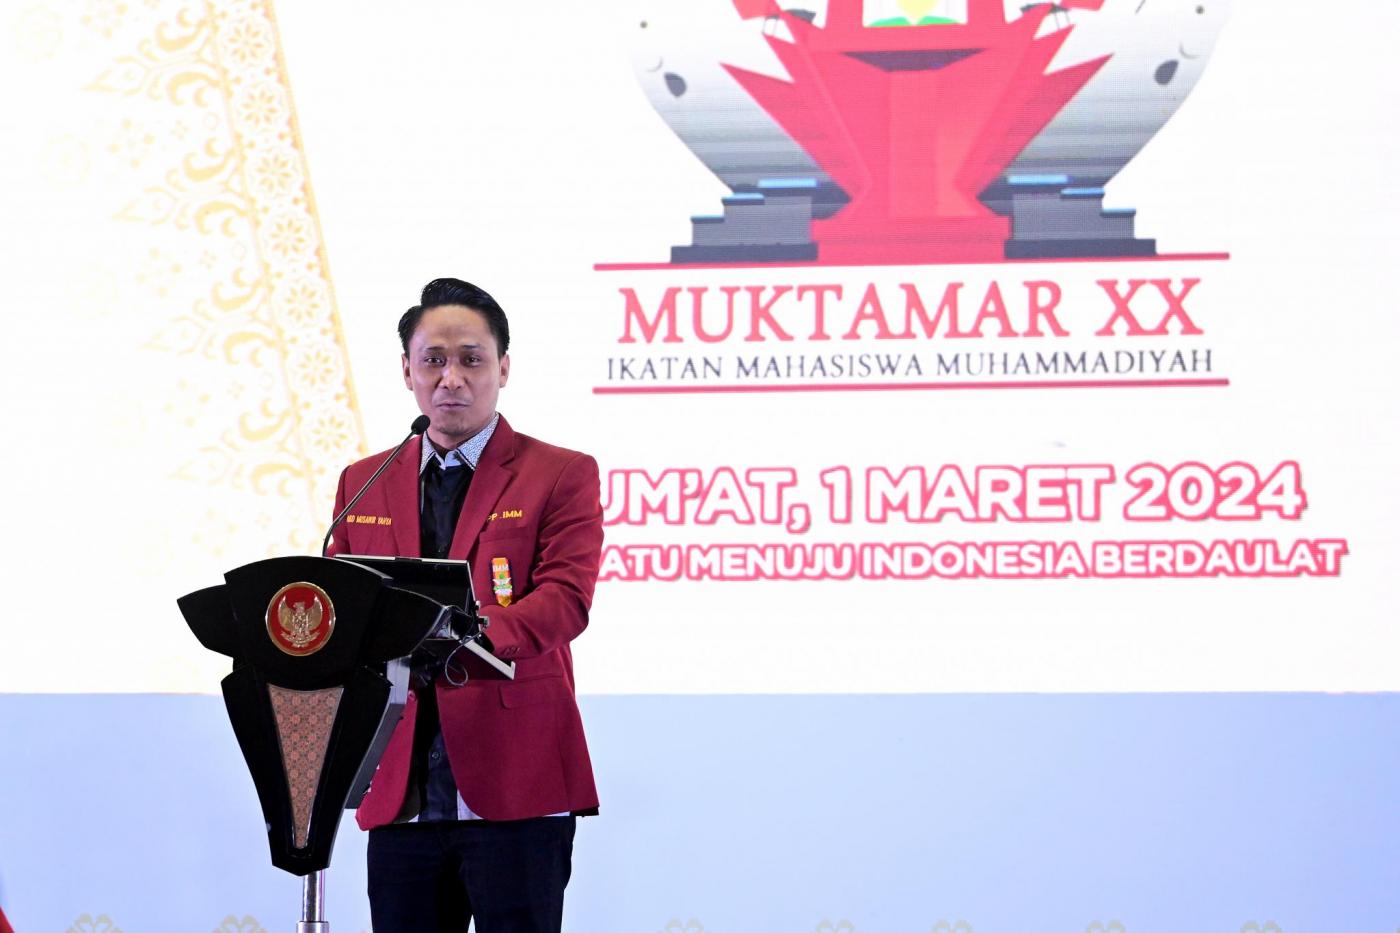 Indonesia Emas 2045: Perspektif Ketua Umum DPP IMM Abdul Musawir Yahya